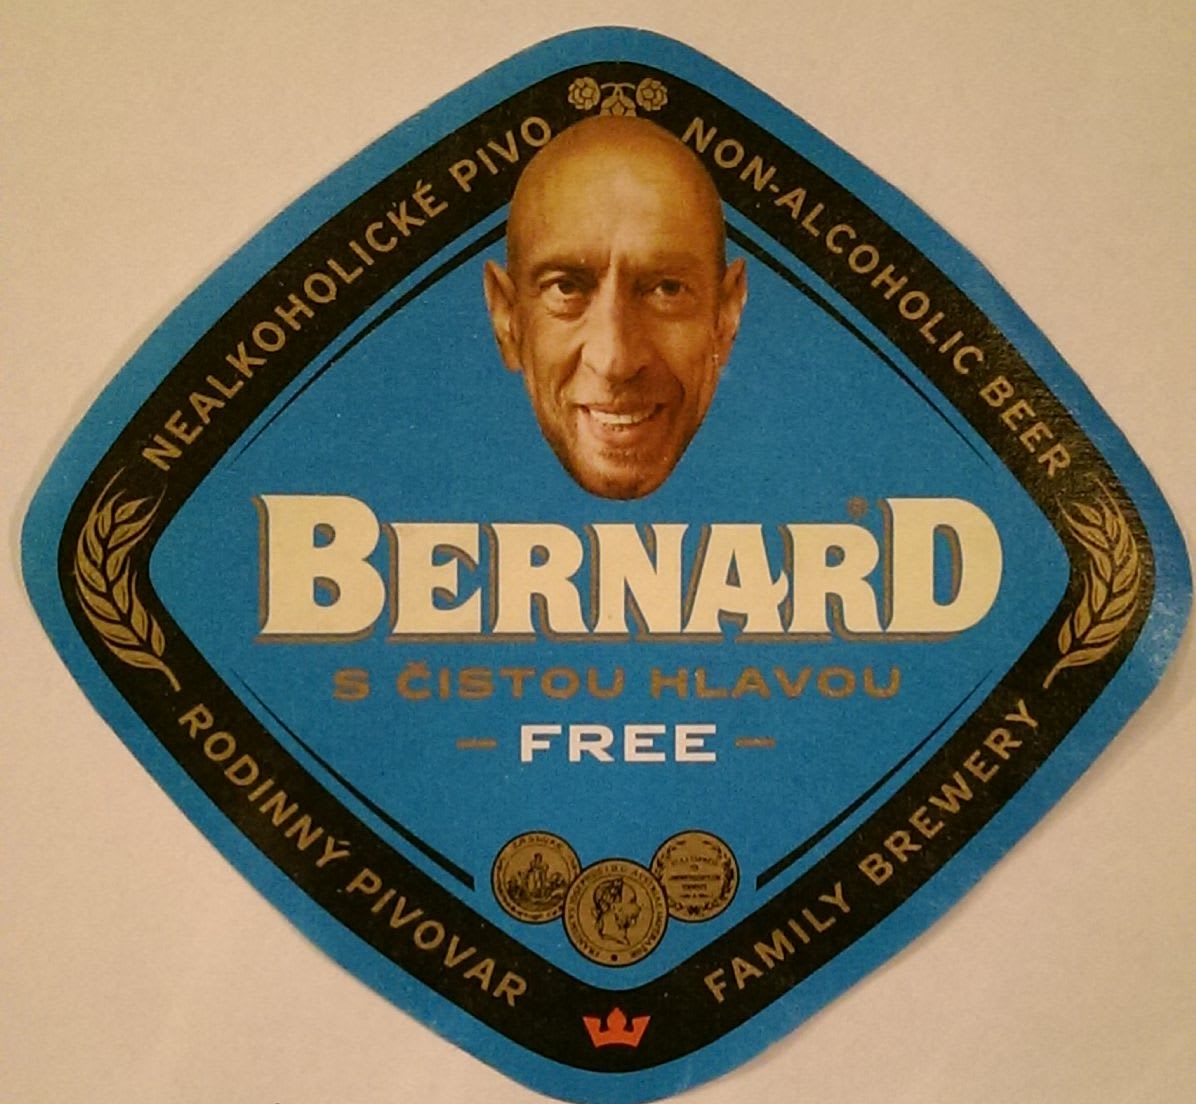 Bernard Free